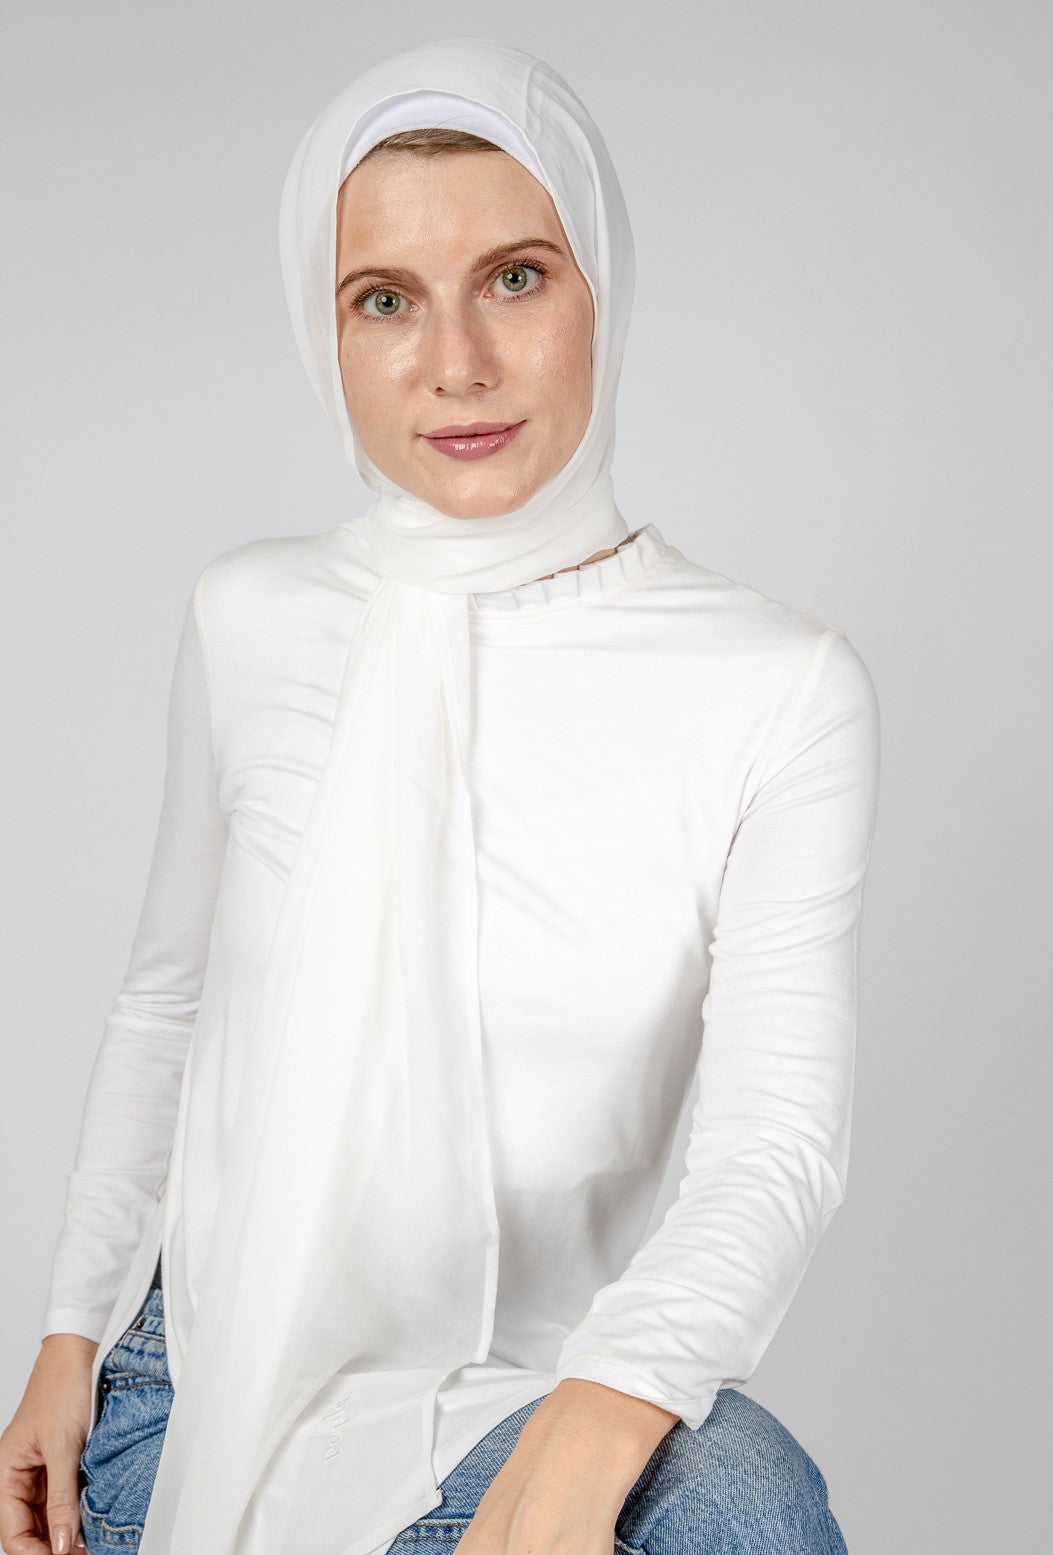 Off-white chiffon scarf